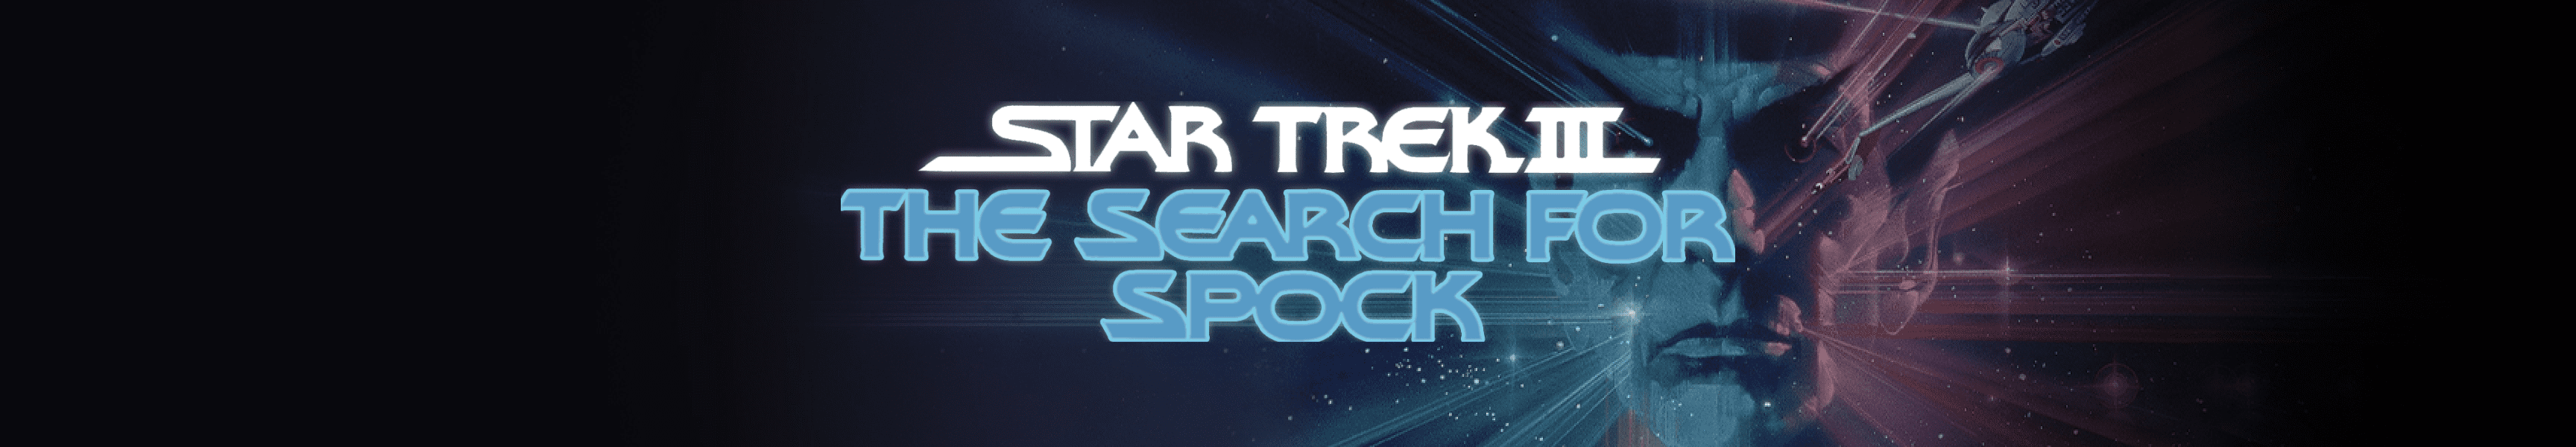 Star Trek III: La búsqueda de Spock